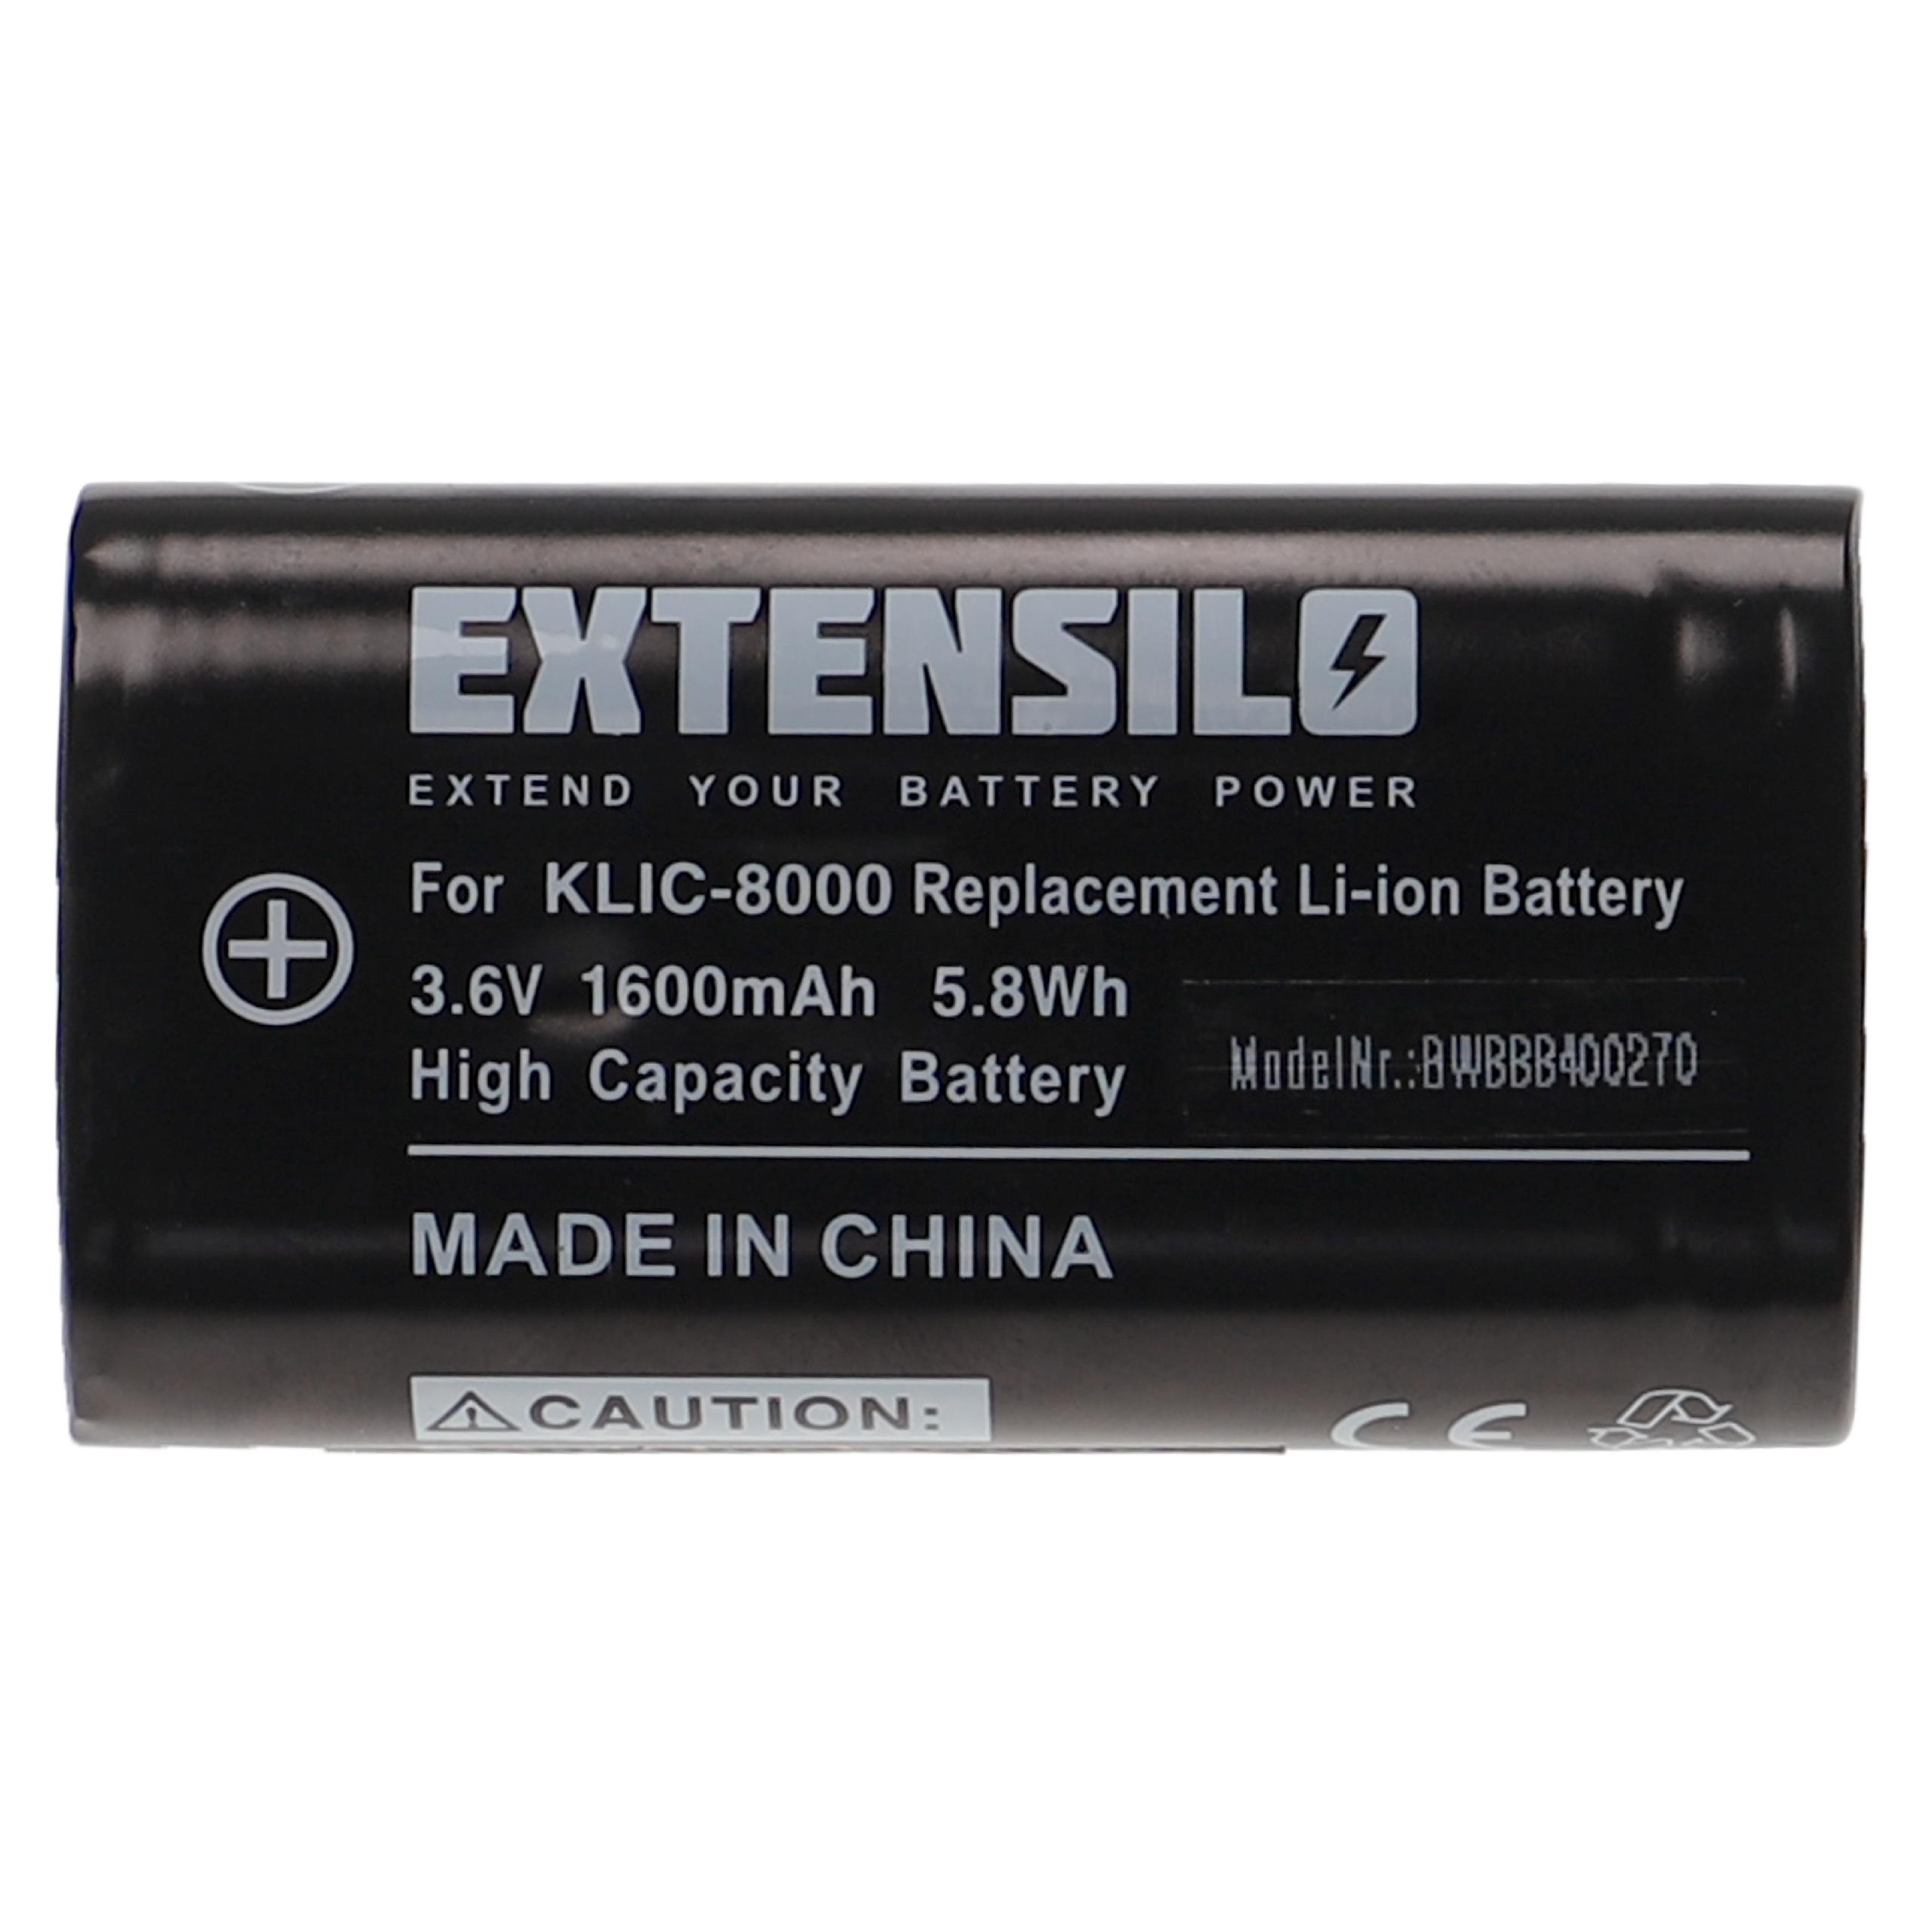 Batterie remplace Kodak RB50, Klic-8000 pour appareil photo - 1600mAh 3,6V Li-ion